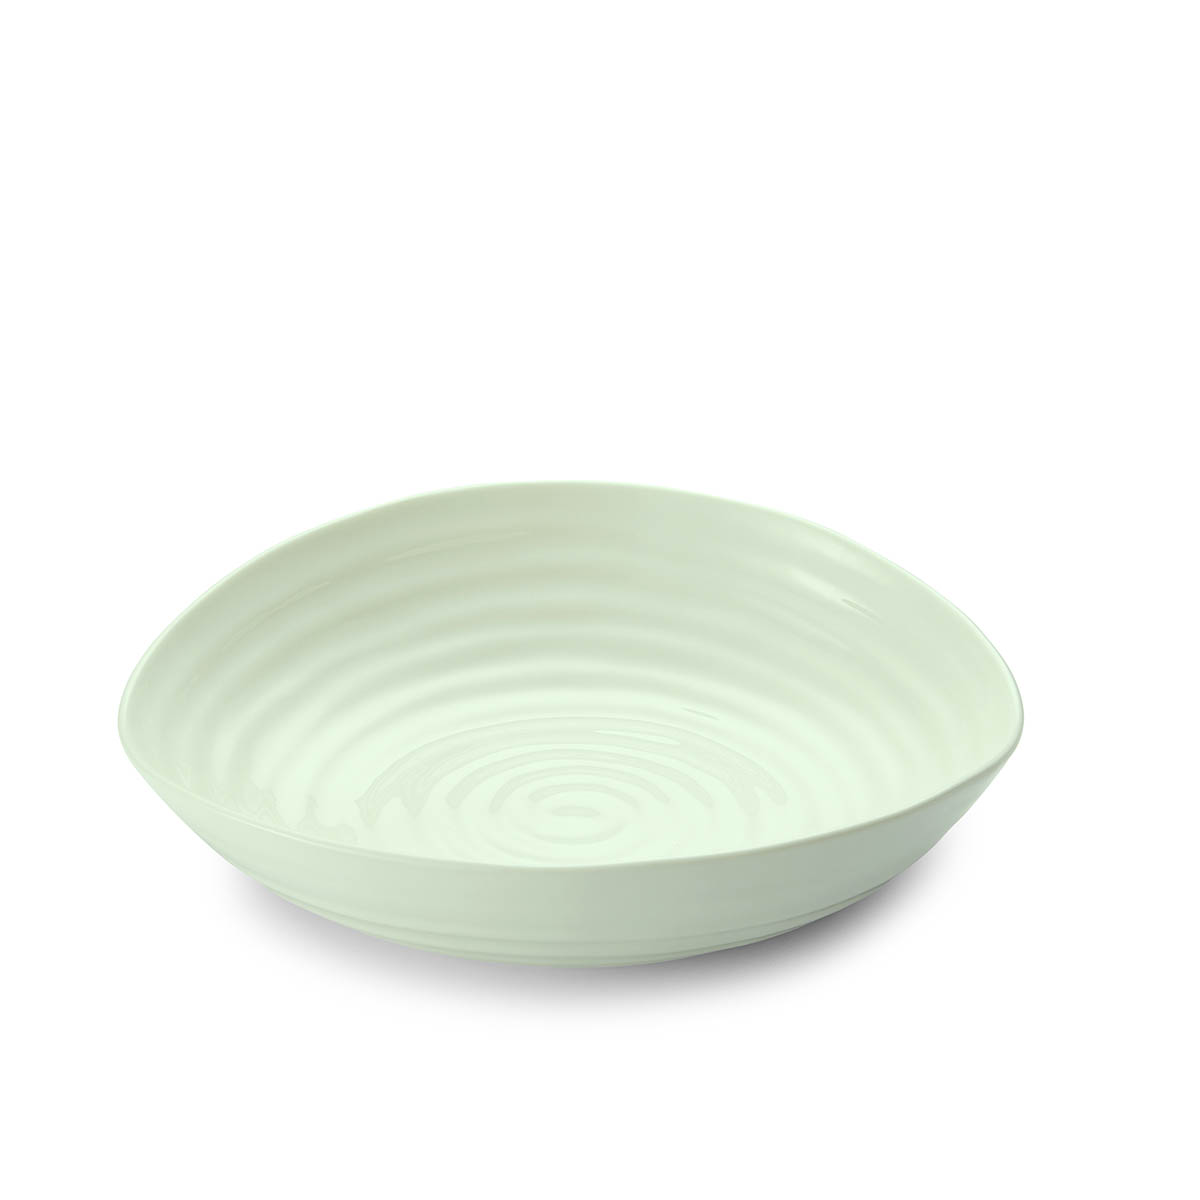 Sophie Conran Celadon Set of 4 Pasta Bowls image number null